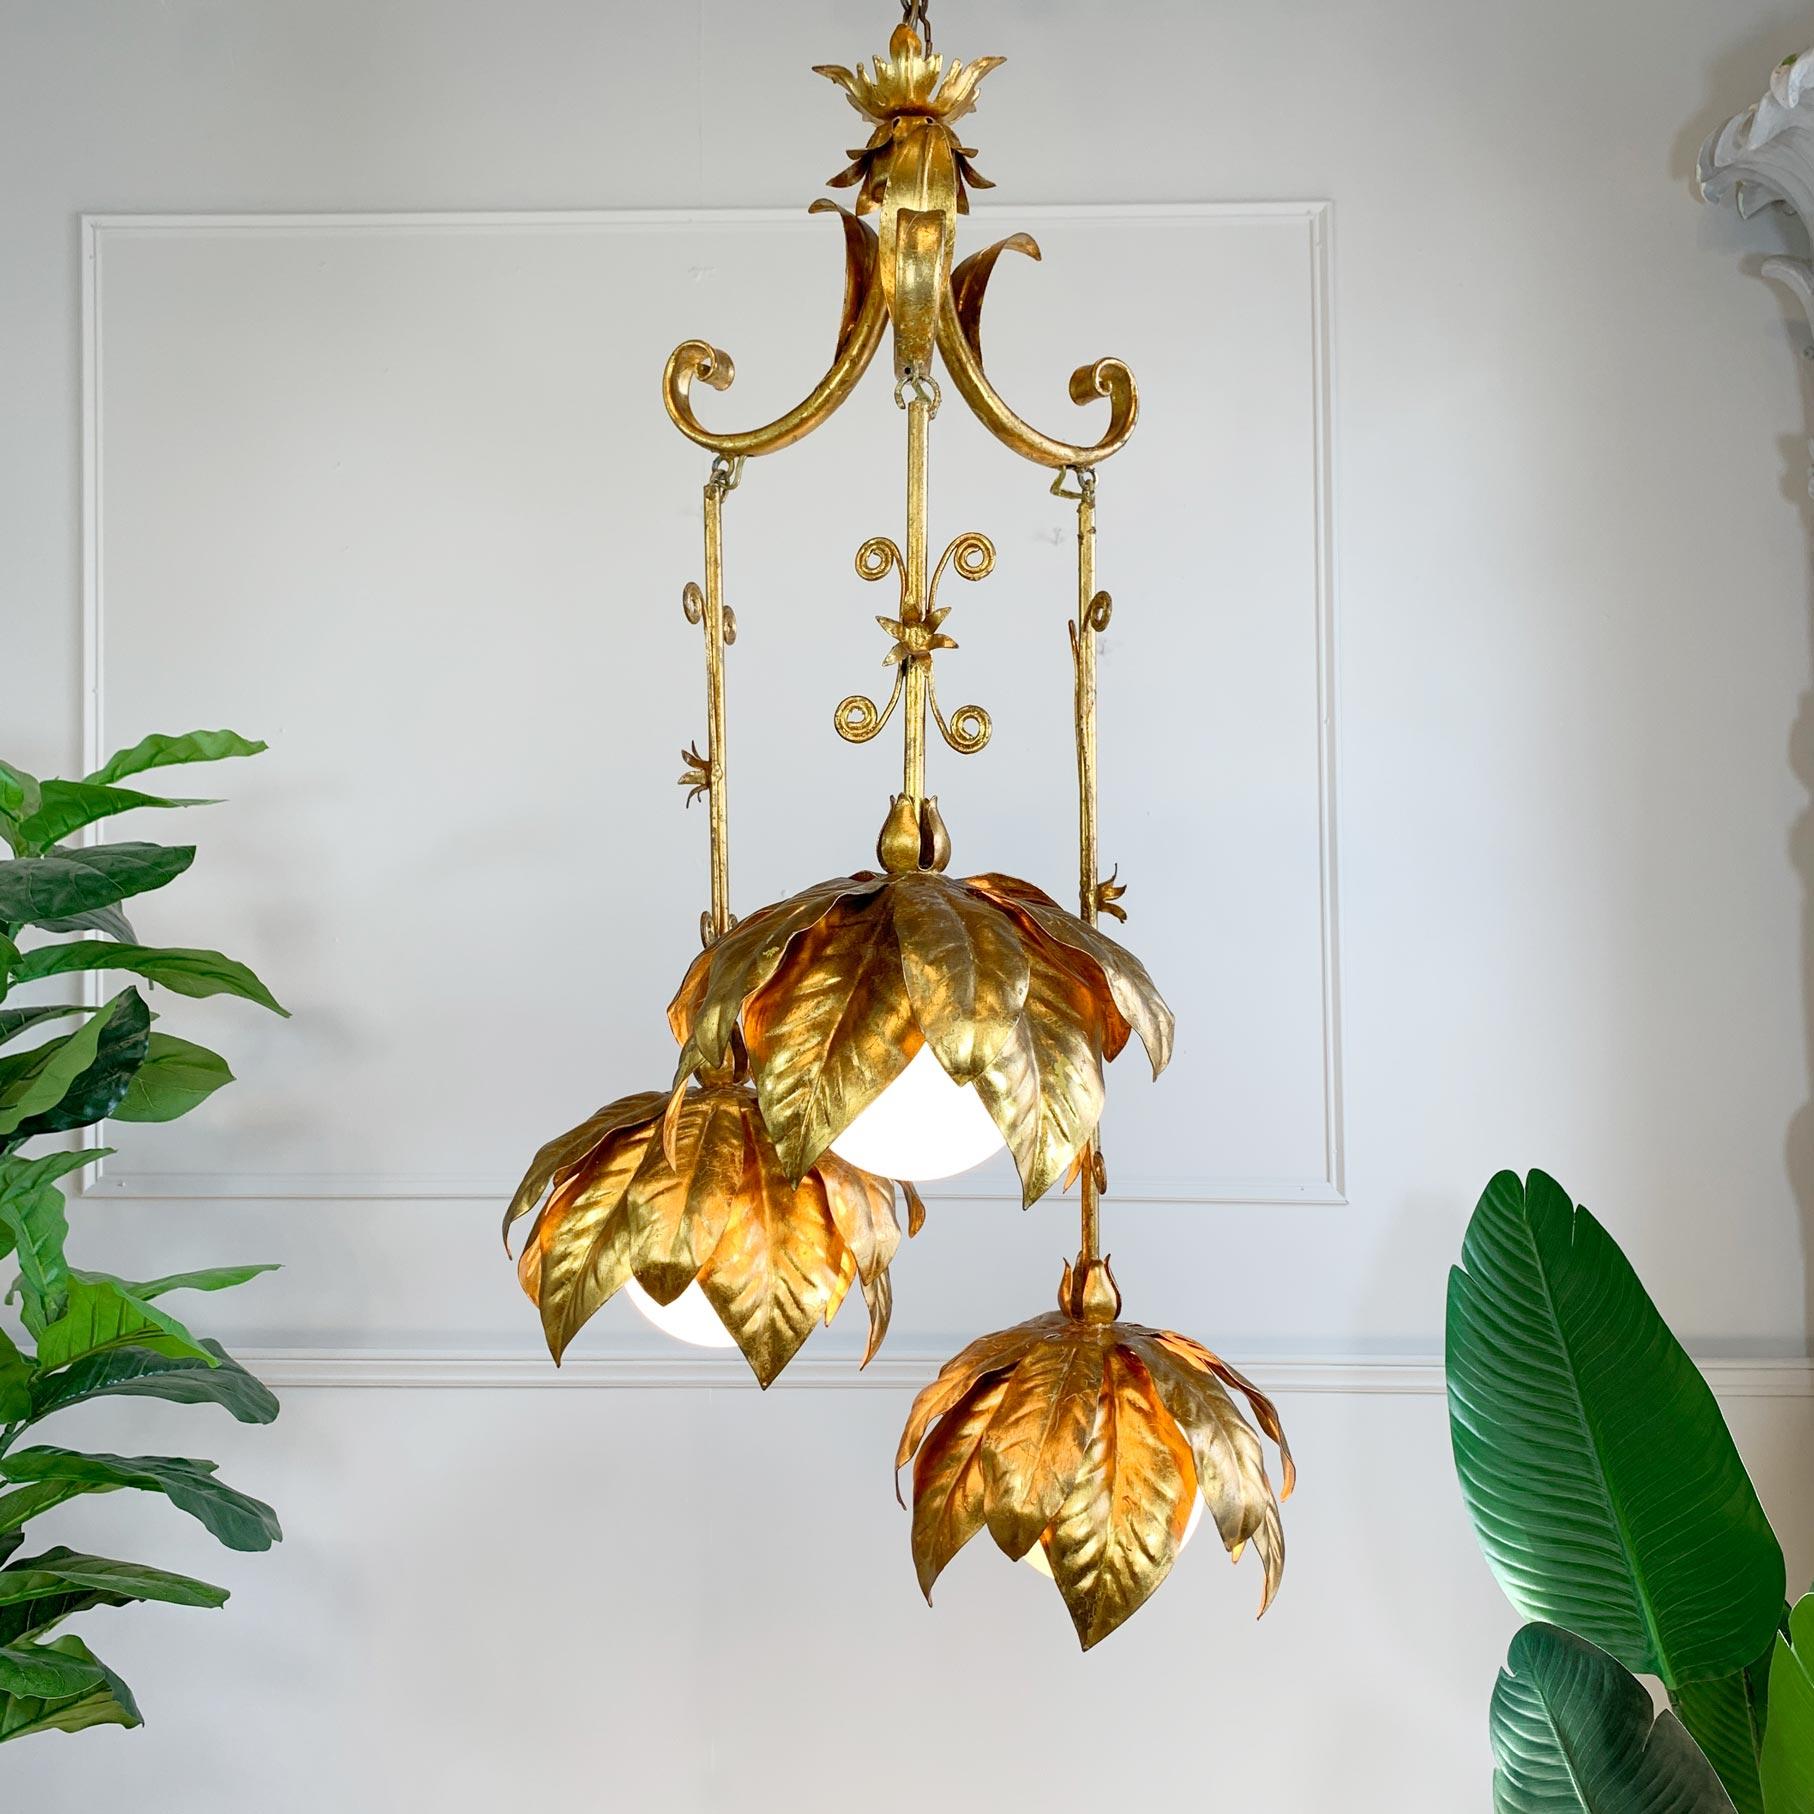 Magnifique décor et très rare, lampe à triple suspension Banci dorée à la feuille d'or, en forme de grandes têtes de fleurs, les trois douilles e14 sont assises derrière des globes en verre opaque.

Fabriqué par la maison de design de renommée